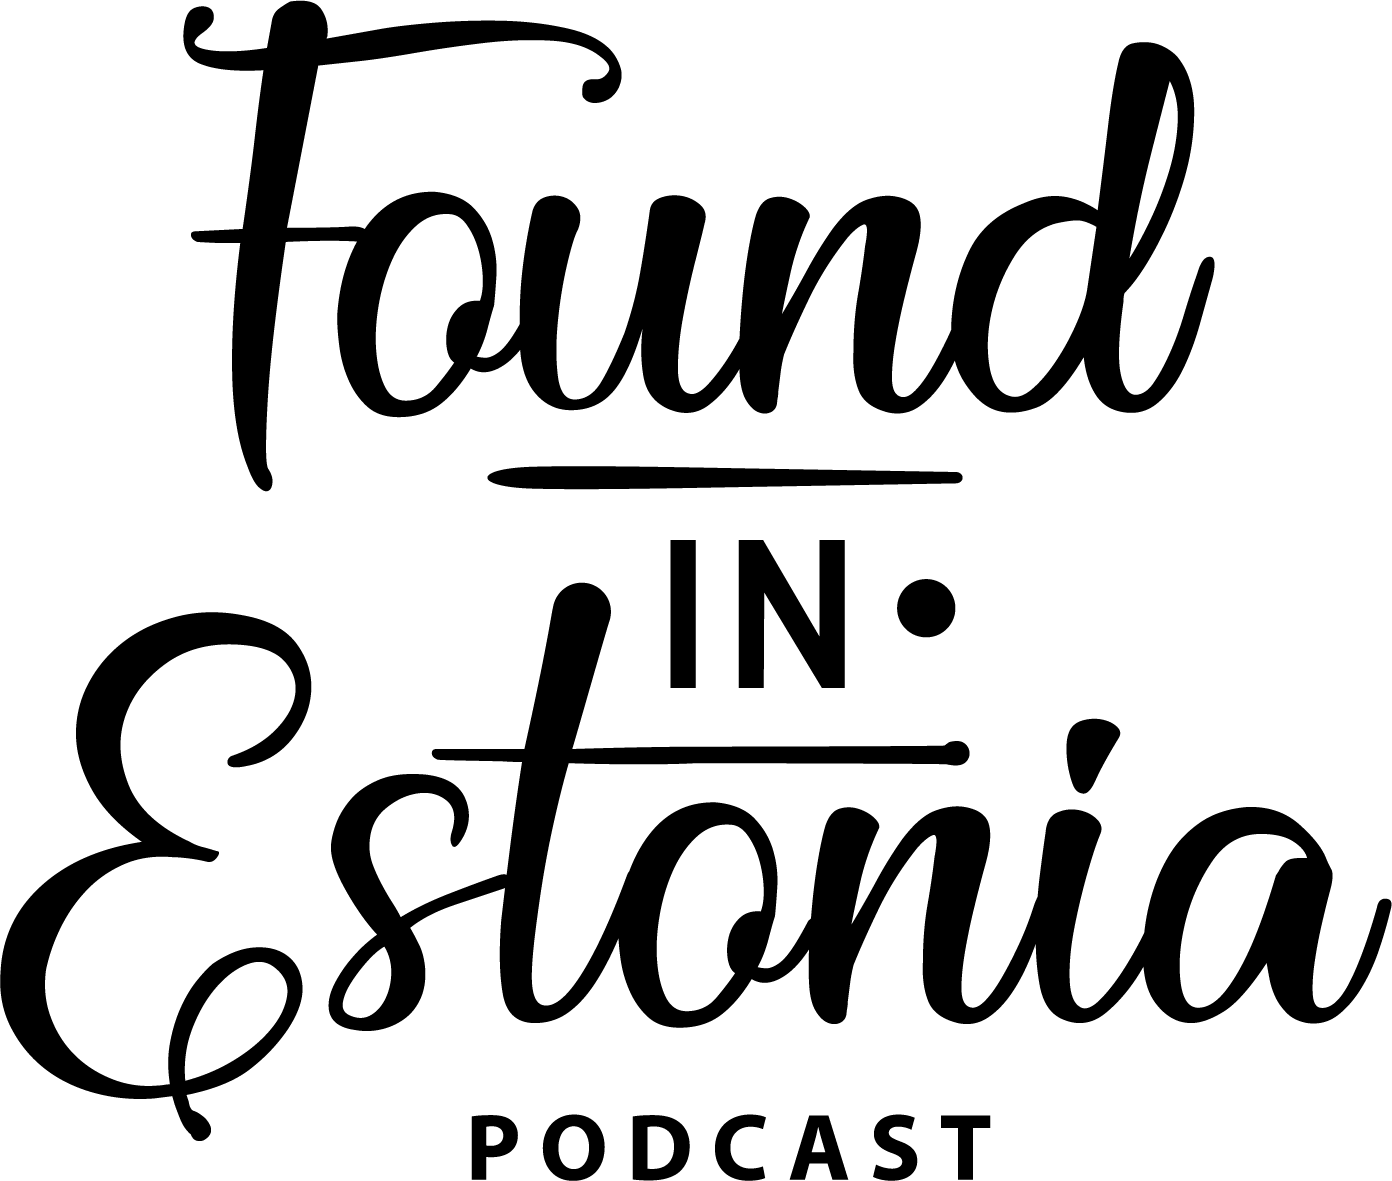 Podcast logo Found in Estonia